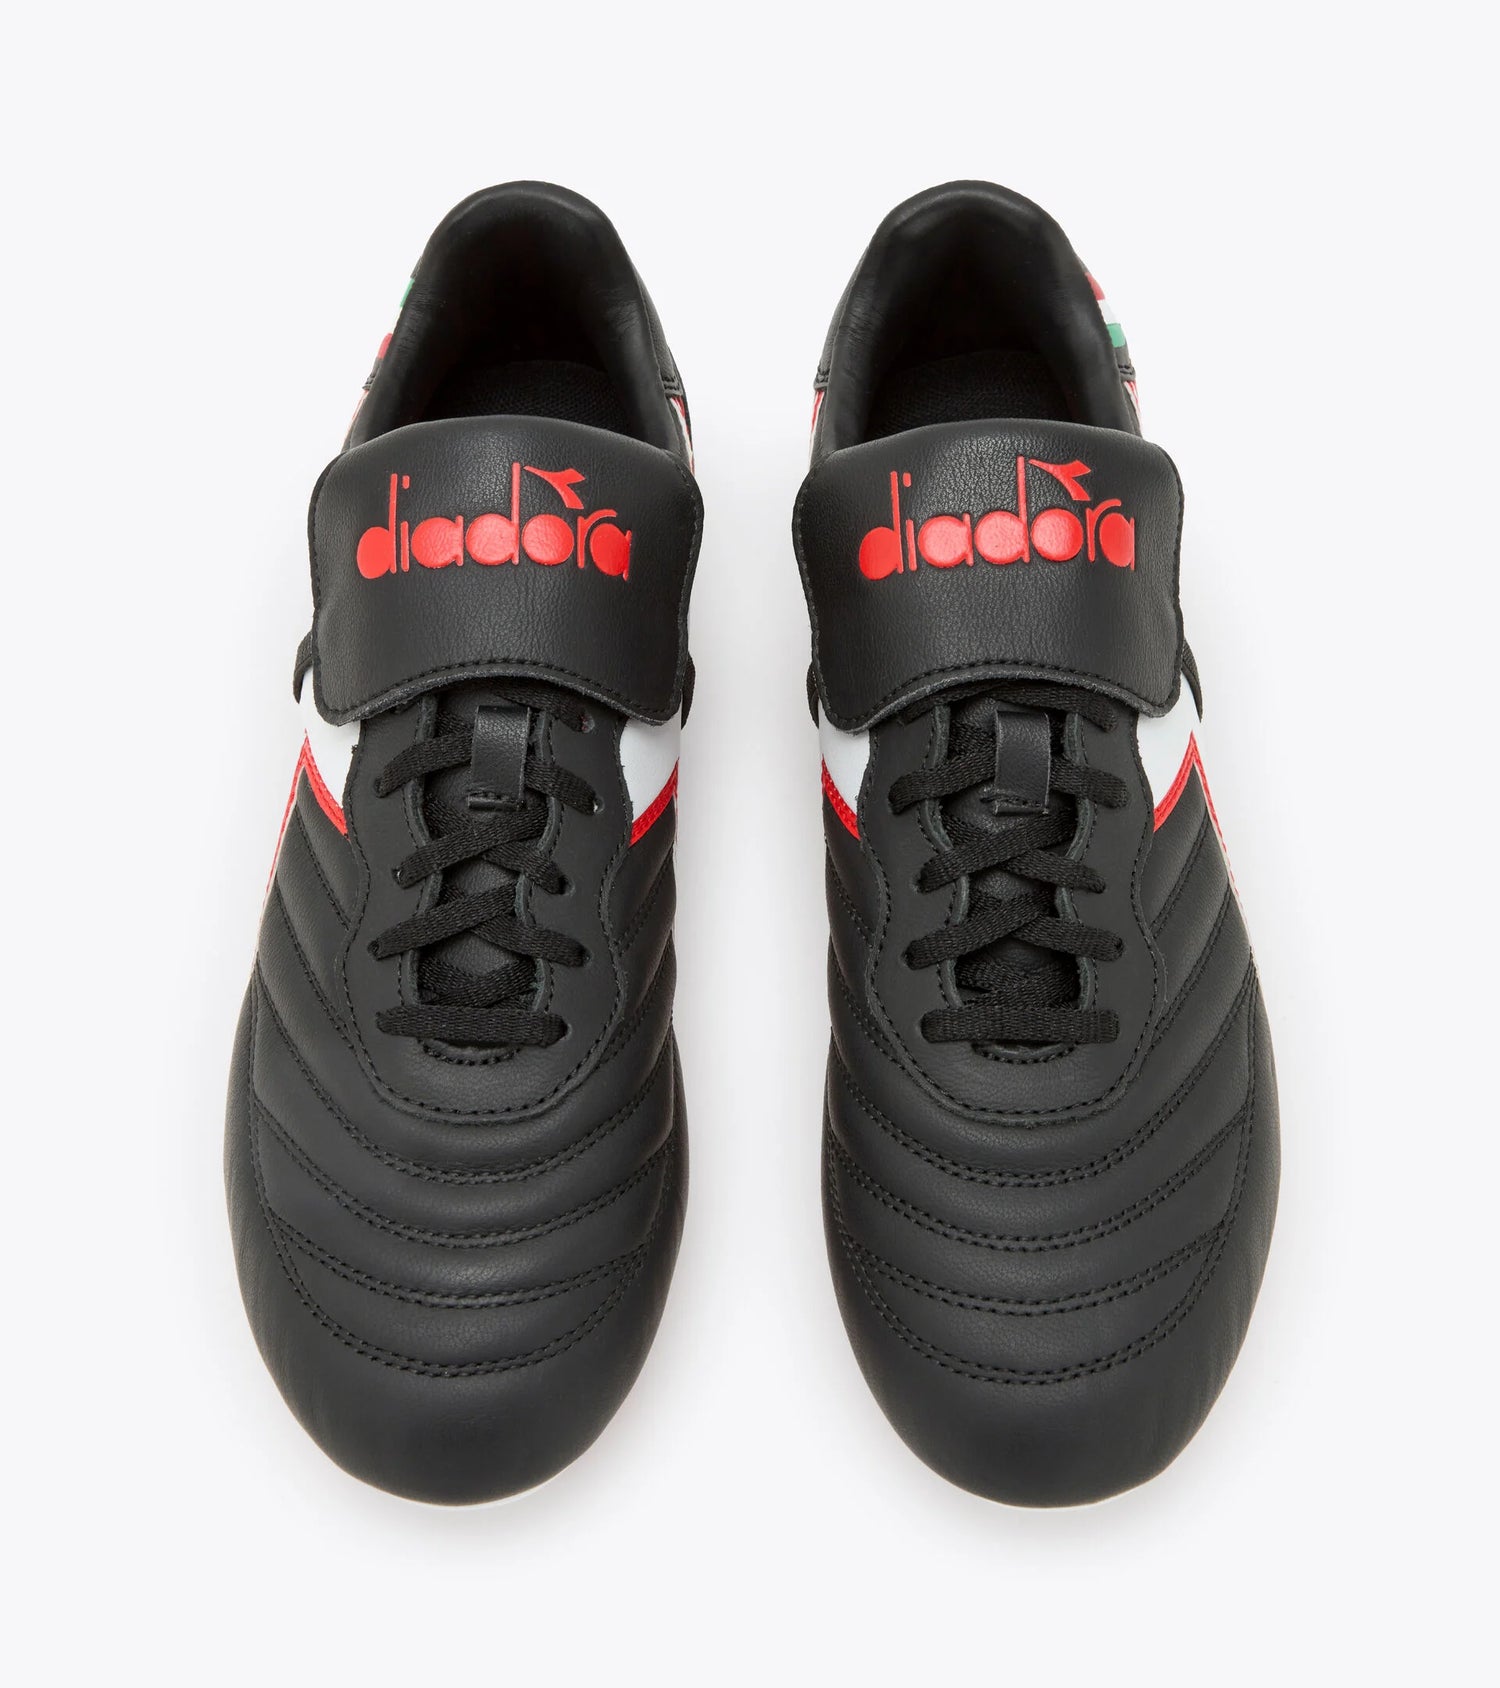 Diadora Brasil OG LT T MDPU Soccer Boots - Black/White/Milano Red